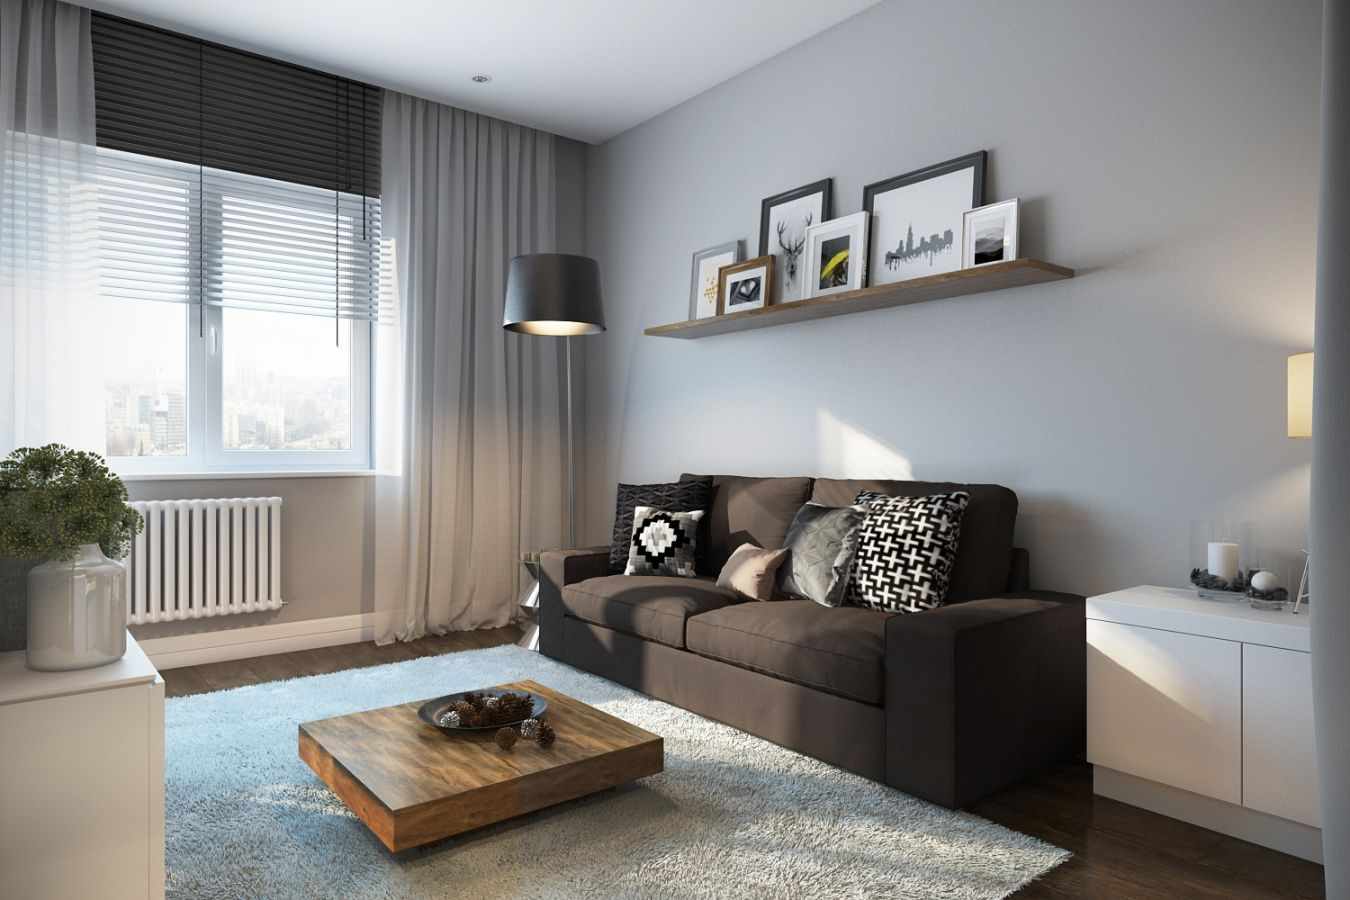 die Idee, ein helles Interieur eines Wohnzimmers im Stil des Minimalismus zu verwenden